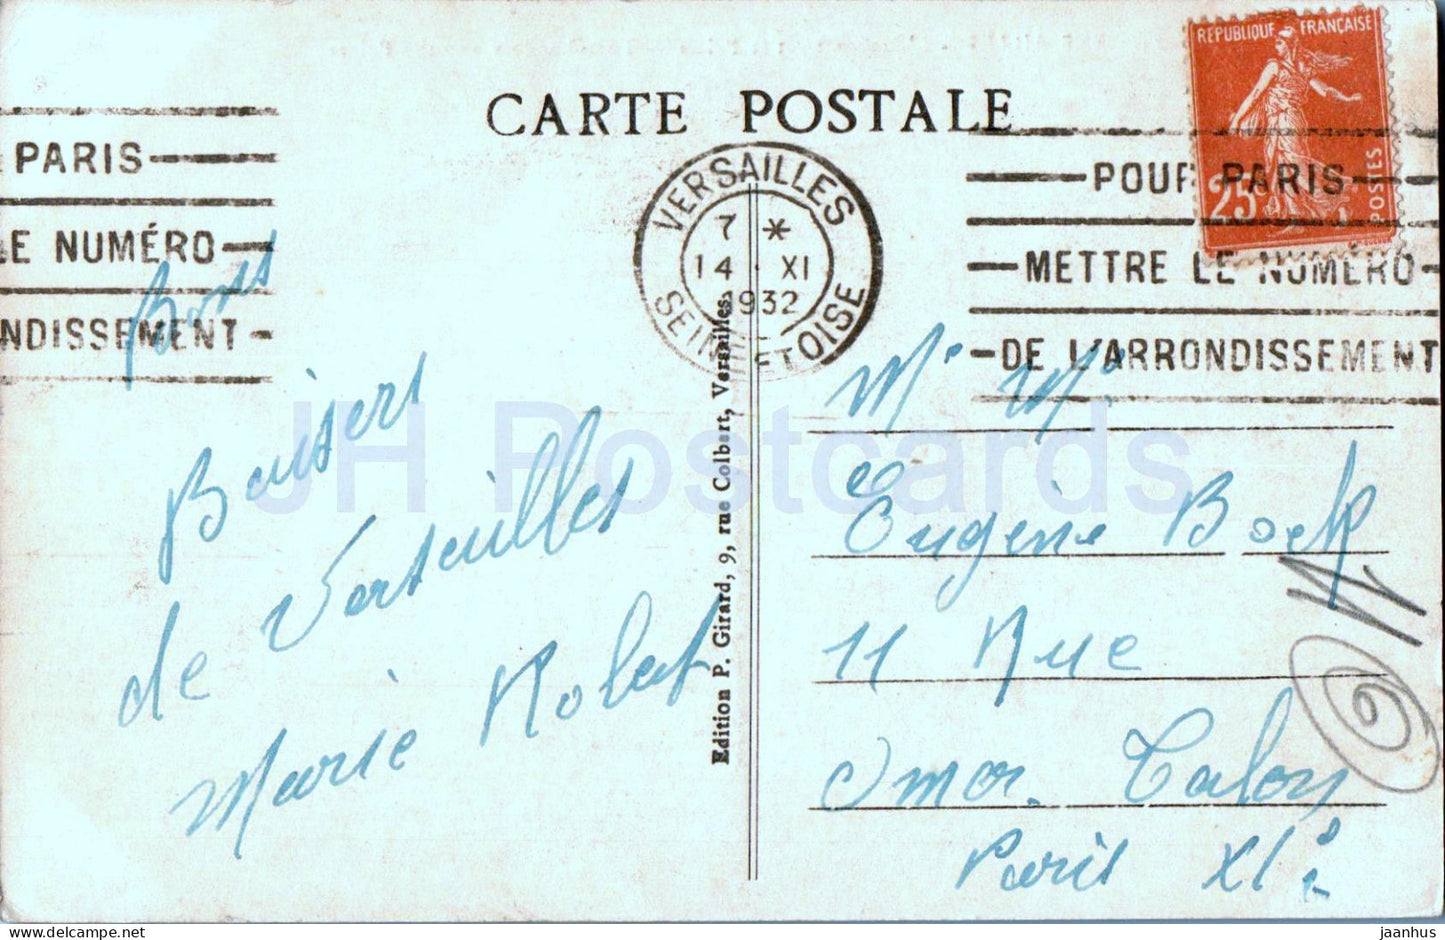 Versailles - L'Orangerie et le Palais - Die Orangerie und das Schloss - 14 - alte Postkarte - 1932 - Frankreich - gebraucht 